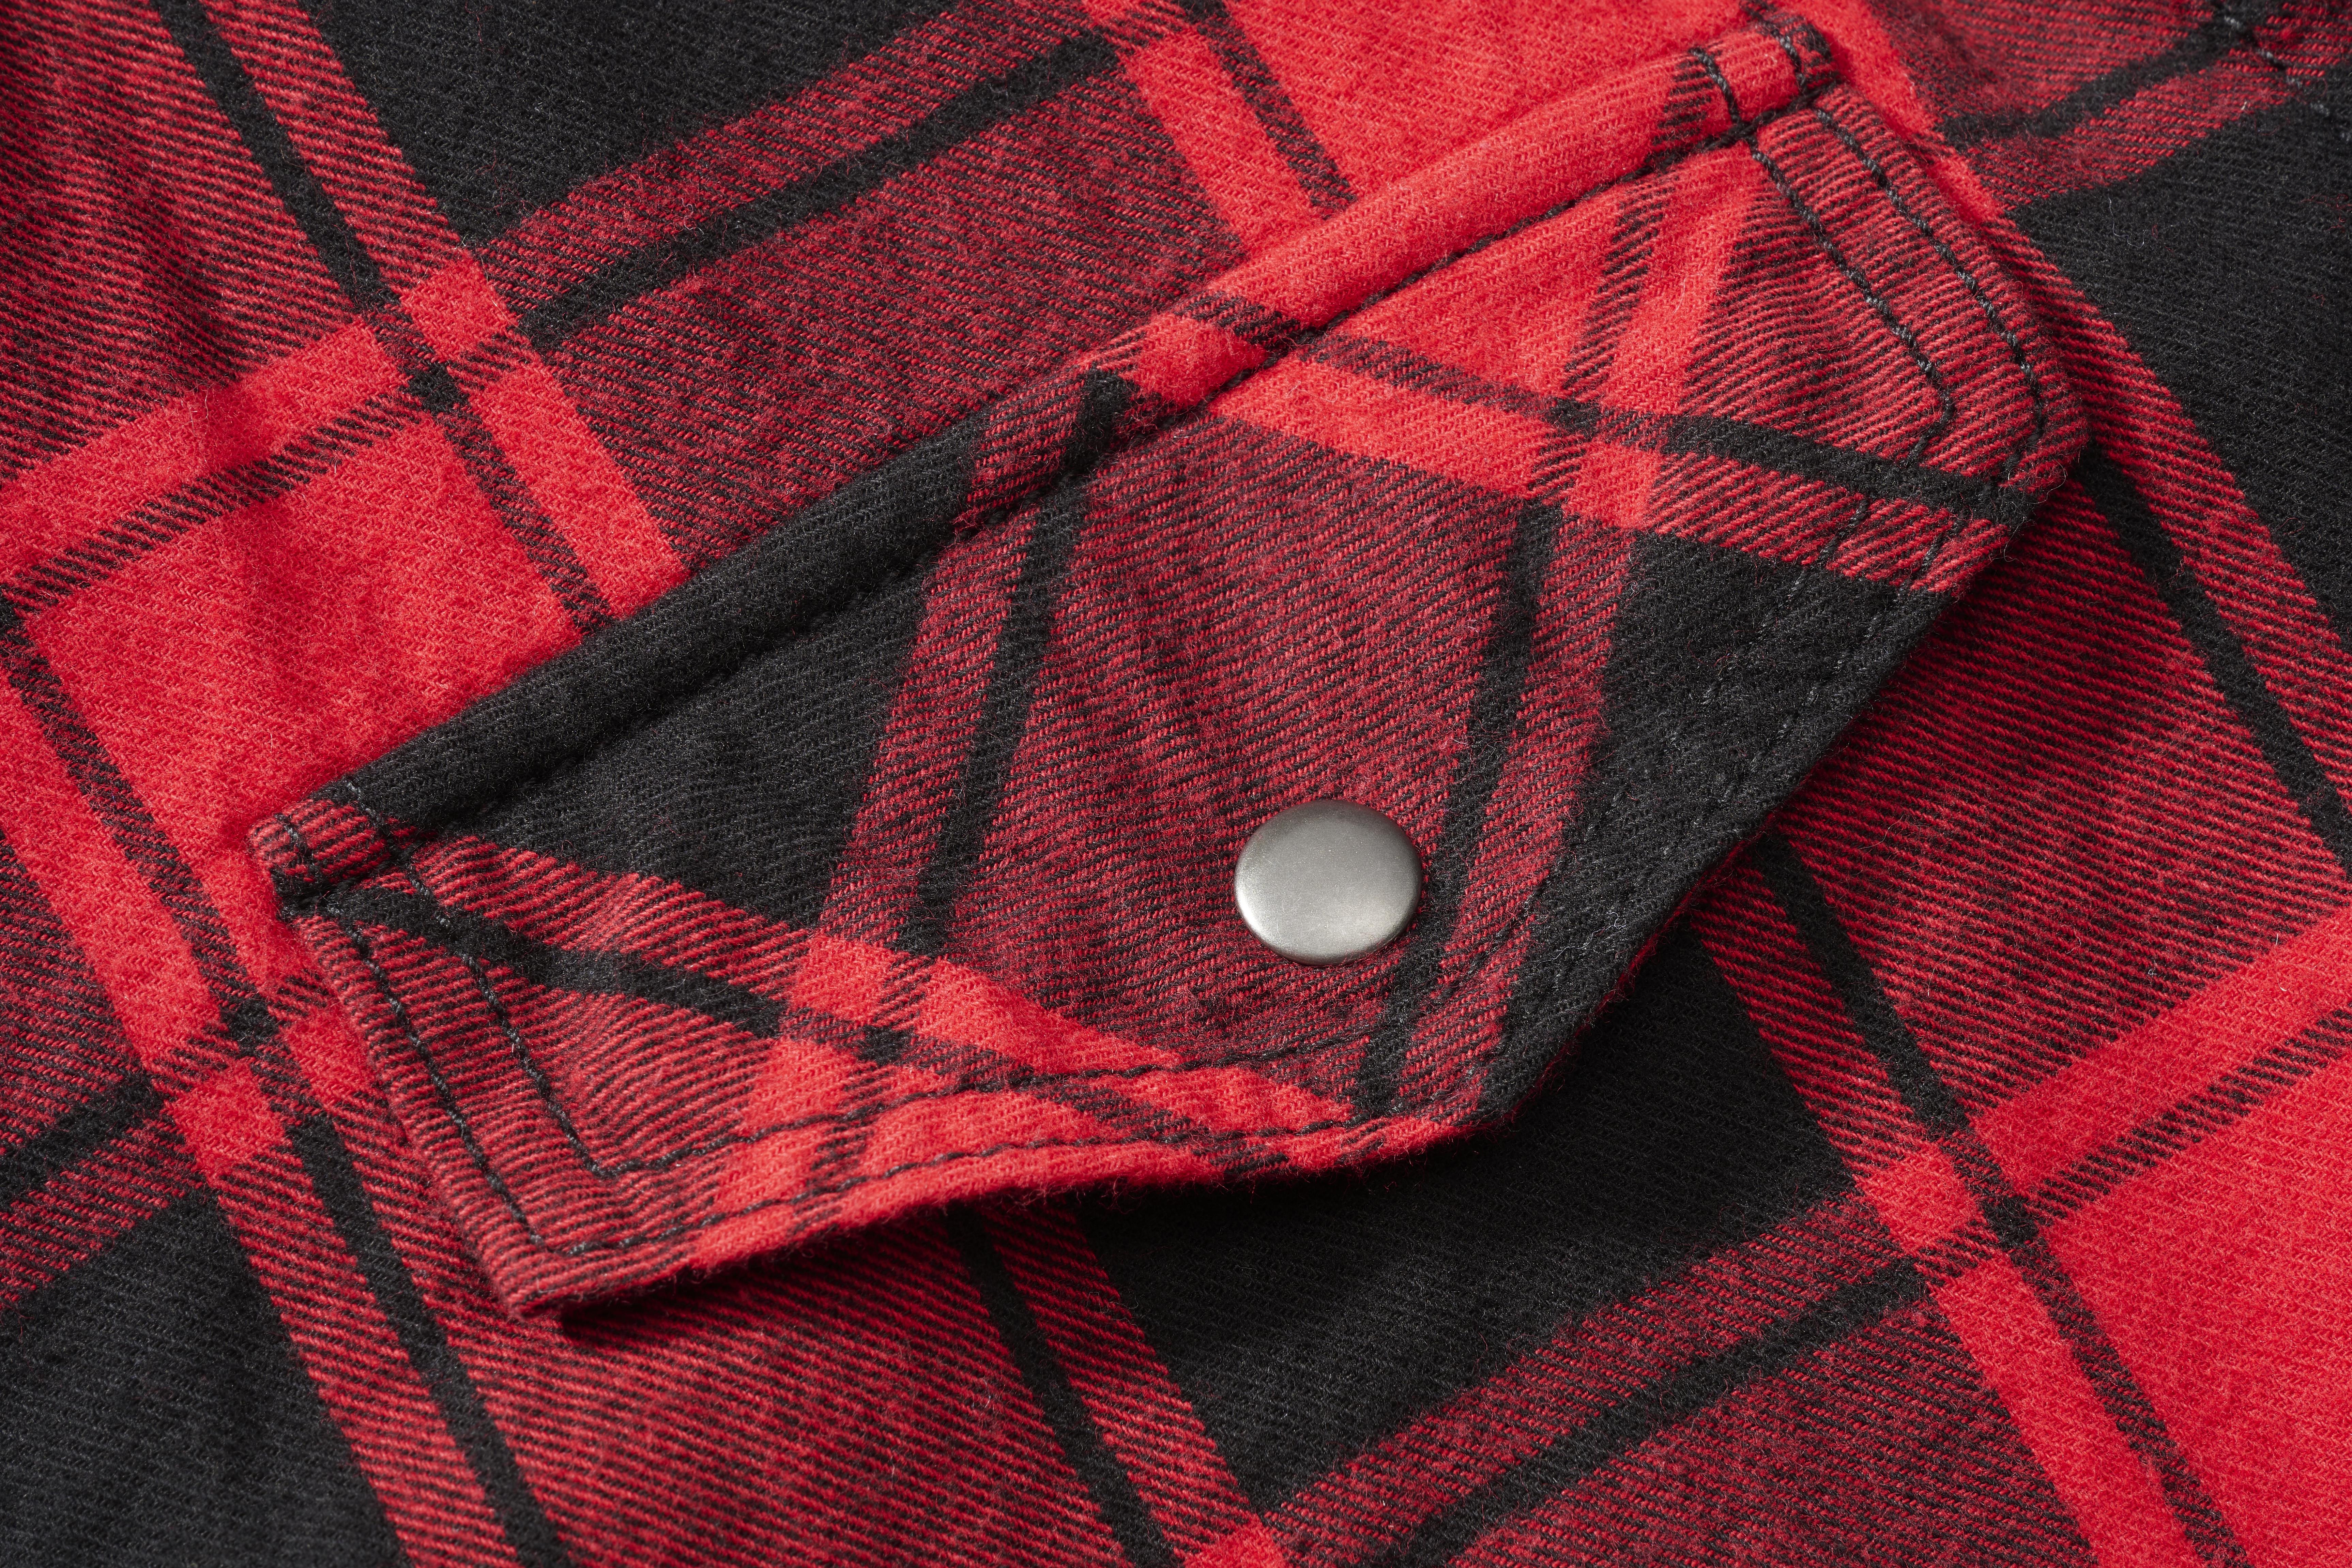 Brandit Checkshirt, Farbe rot/schwarz, Größe L